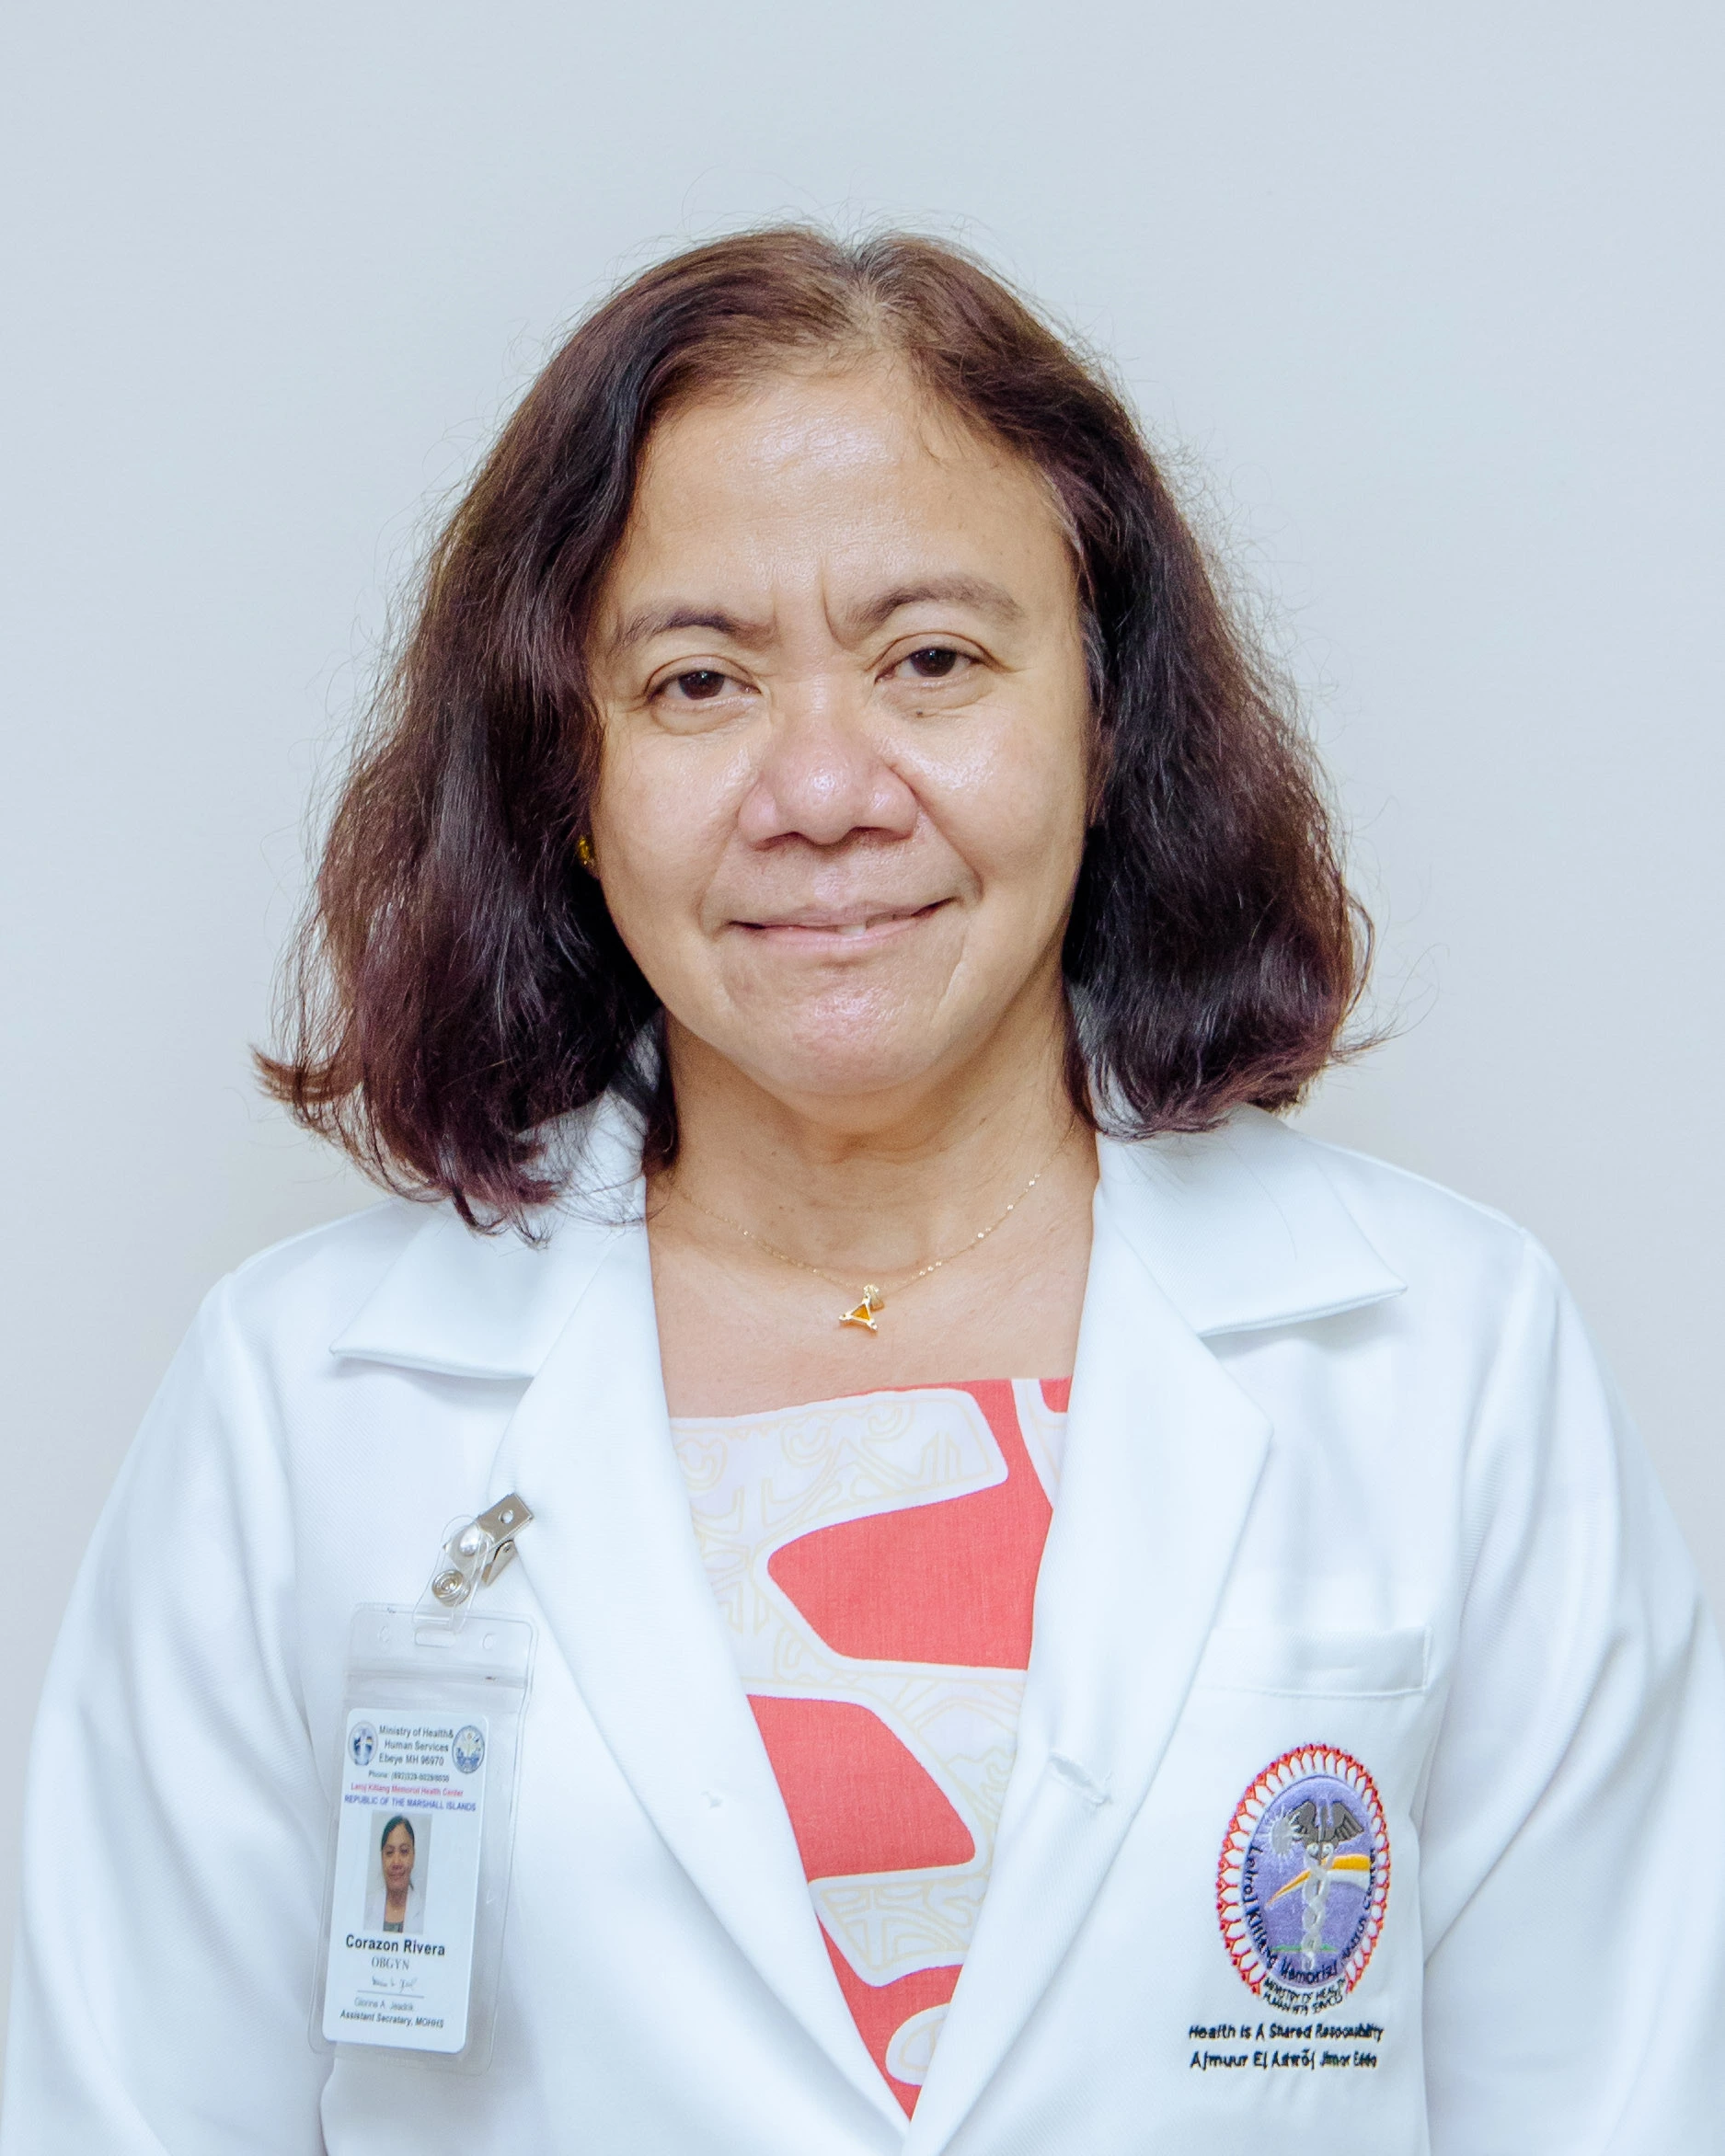 Dr. Corazon Rivera